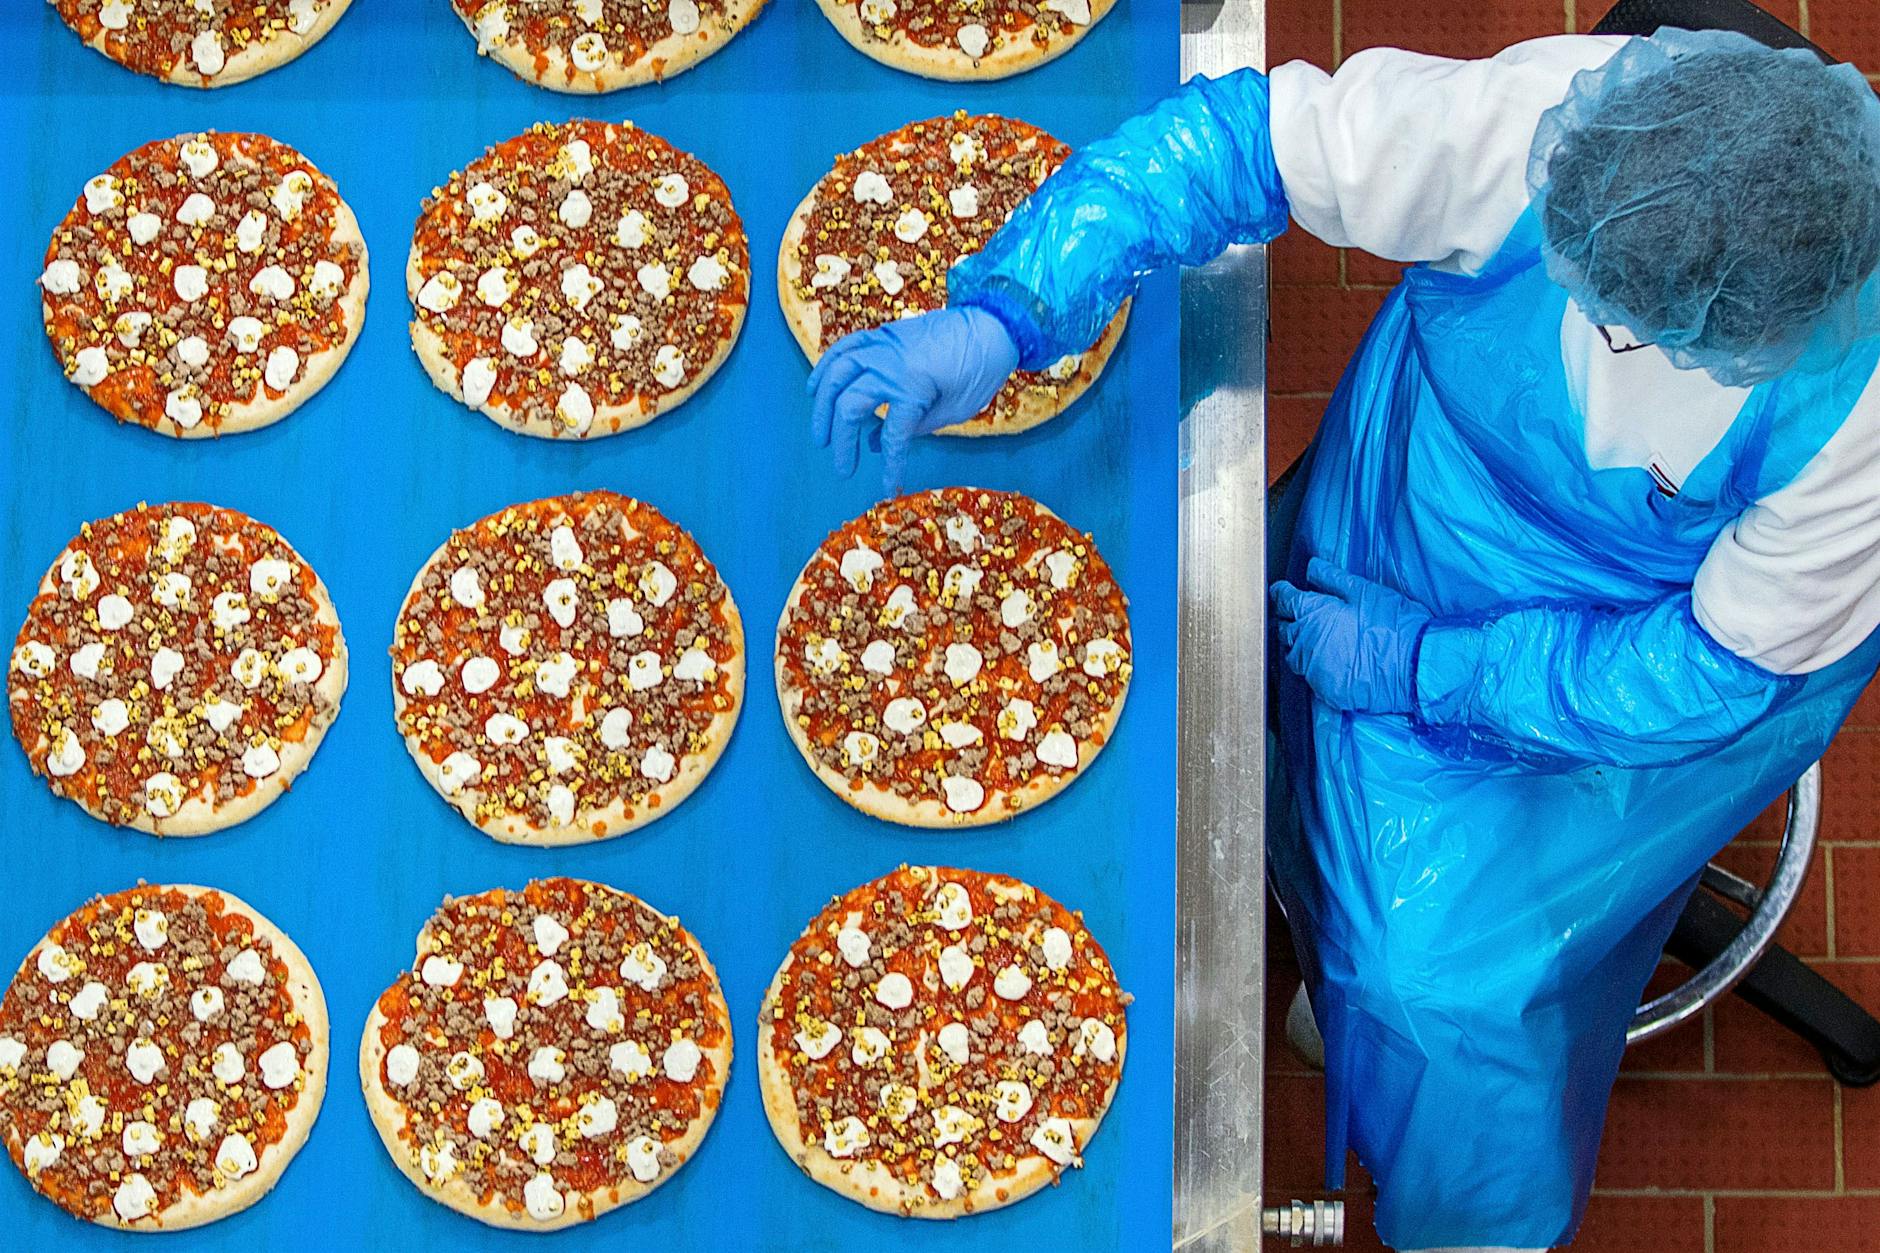 Politiker plant Supermarkt-Revolution: Staatsrezepte für Pizza und Co